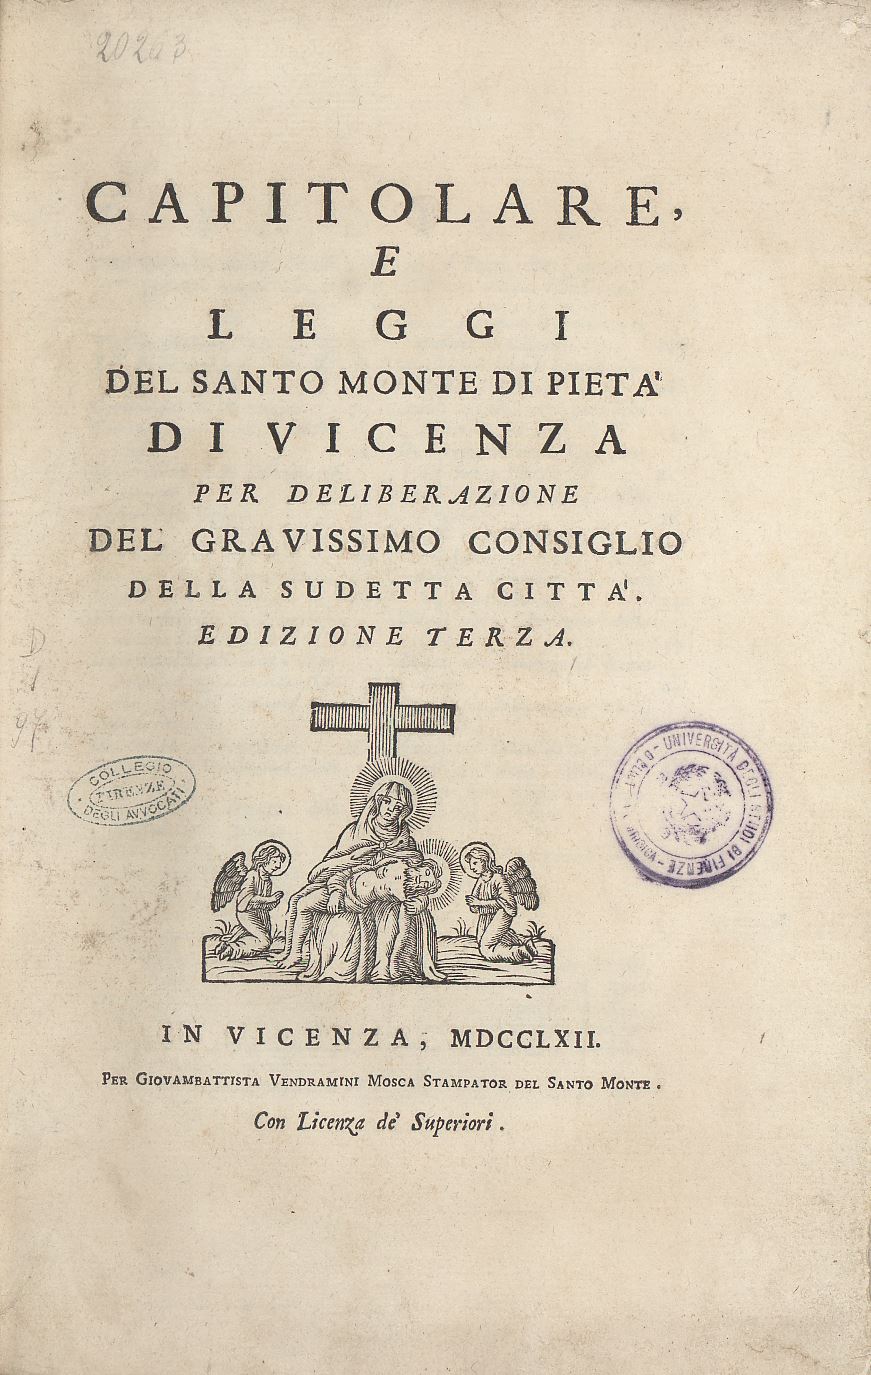 Capitolare, e leggi del santo monte di pietà di Vicenza 